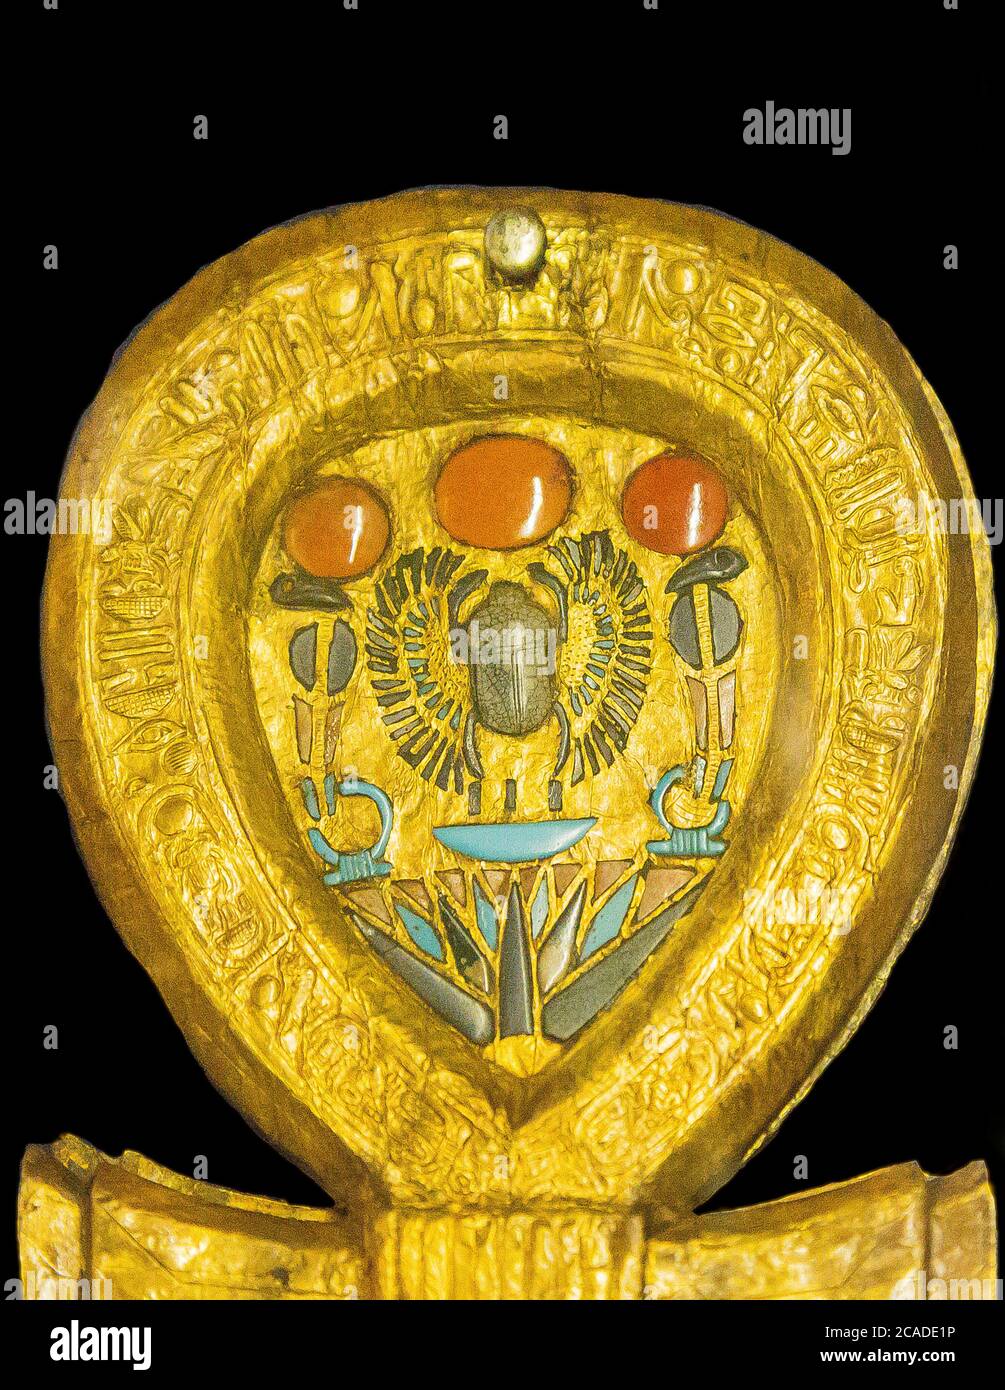 Egitto, Cairo, Tutankhamon gioielli: Cassa a specchio a forma di segno Ankh. All'interno dell'anello, uno scarabeo alato. Foto Stock